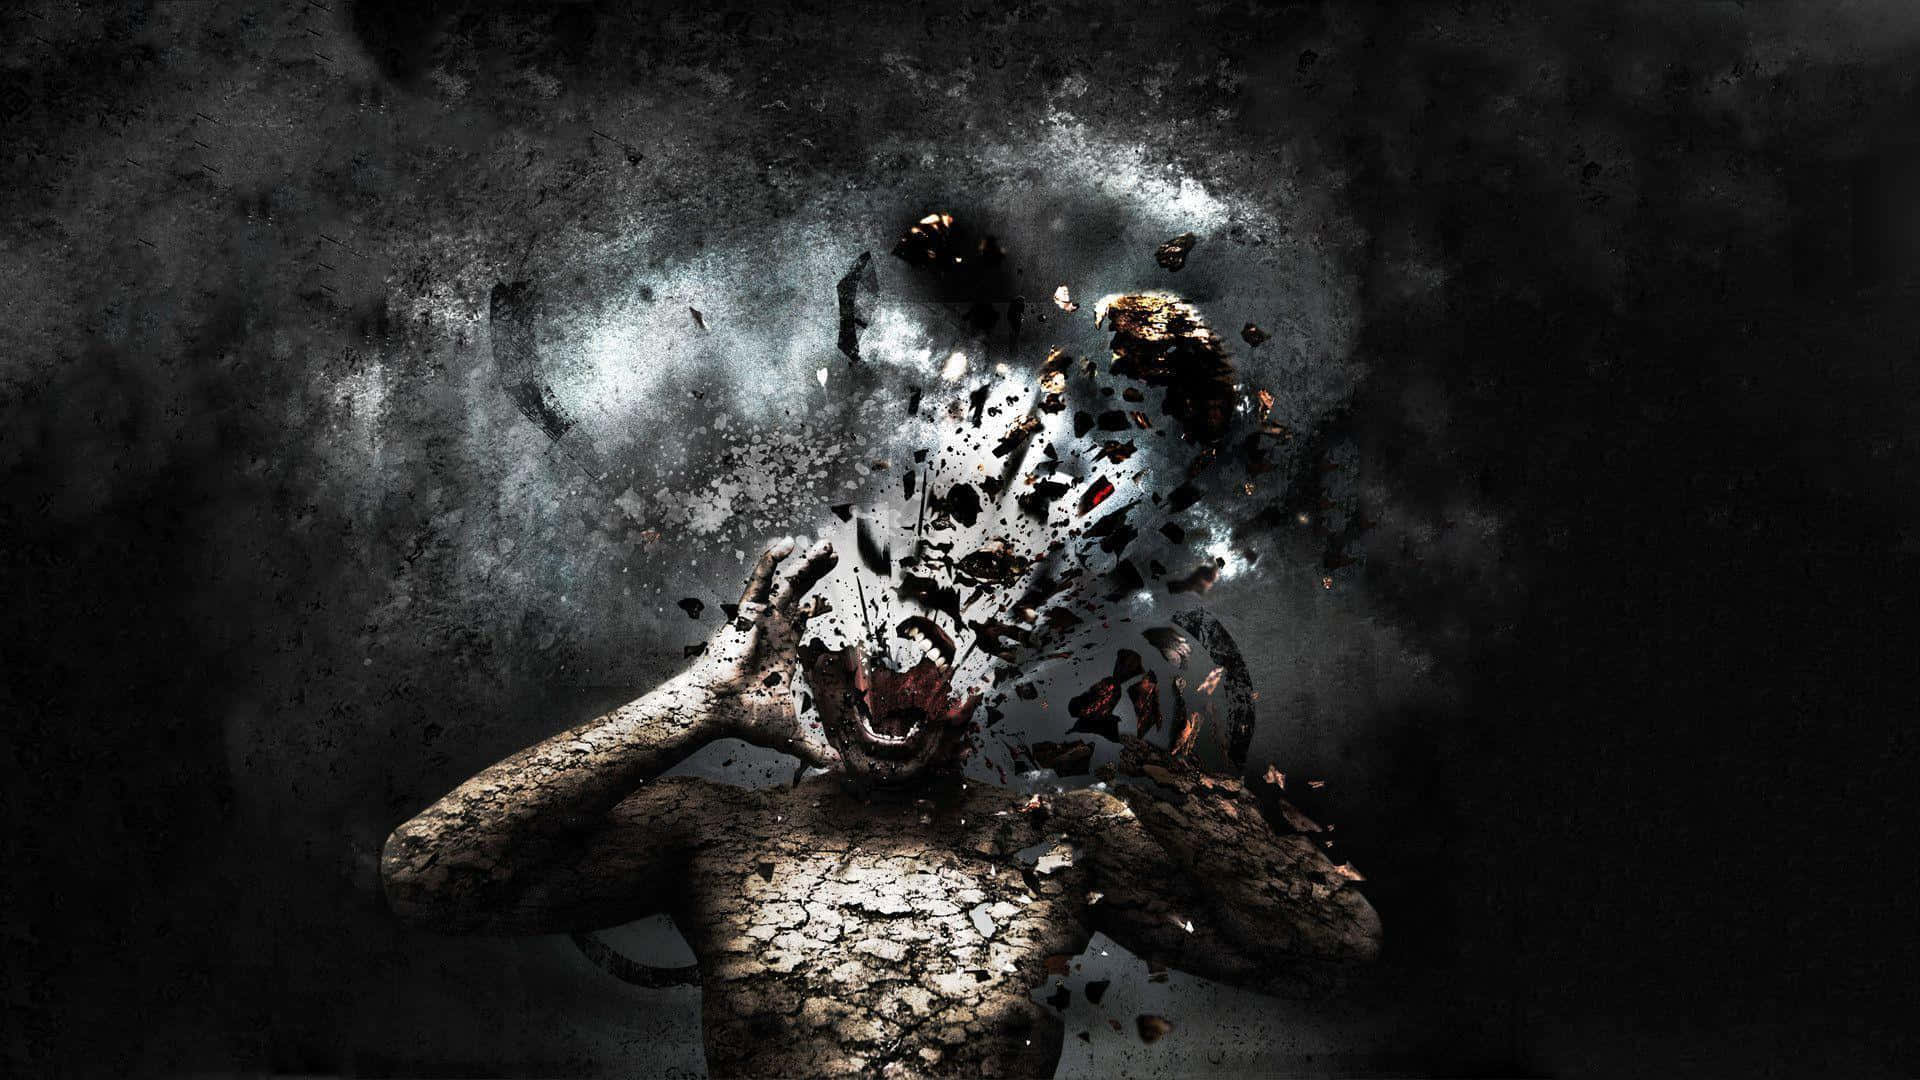 Odd Monster Screaming [wallpaper] Background